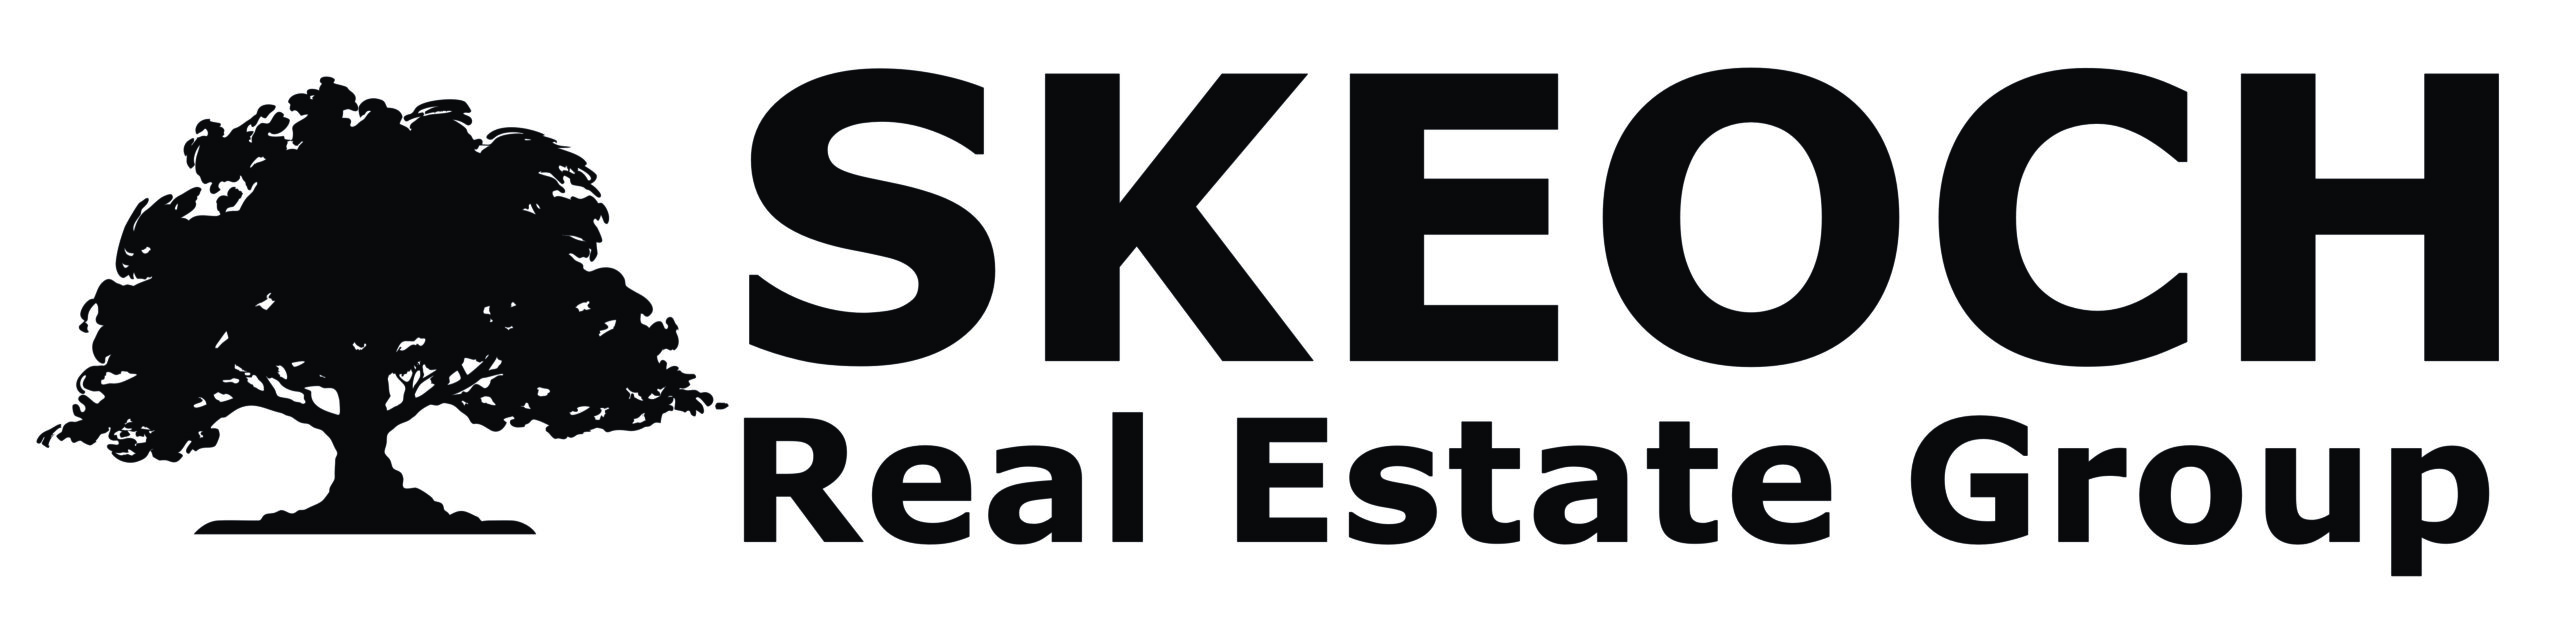 Skeoch Real Estate Group